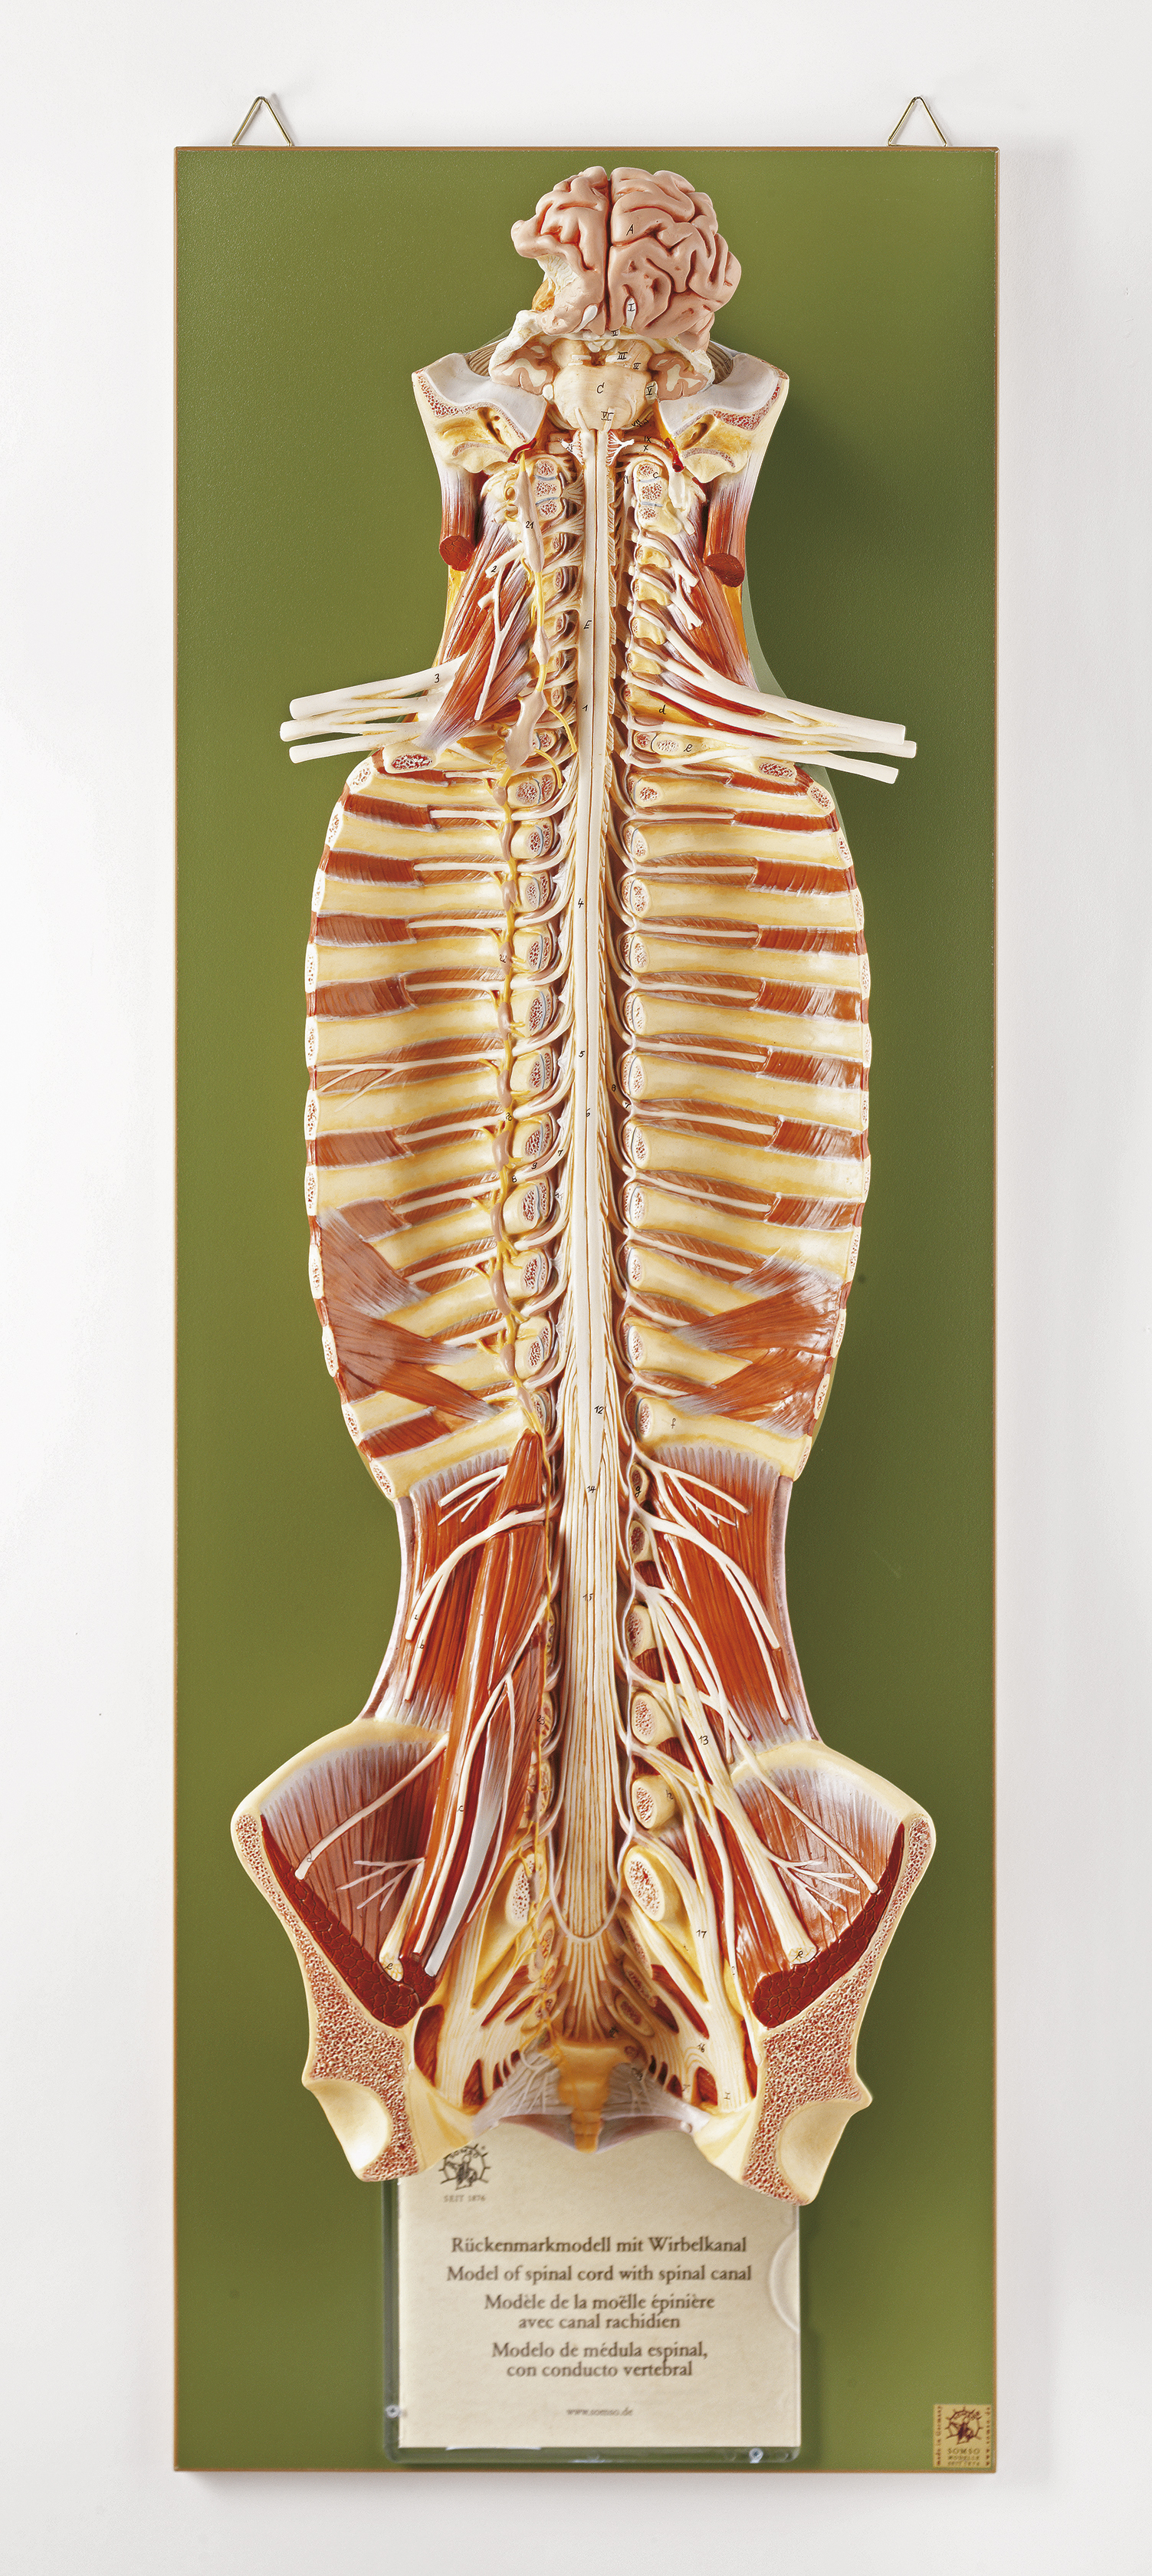 Rückenmark mit Wirbelkanal, Bestellnummer BS 31